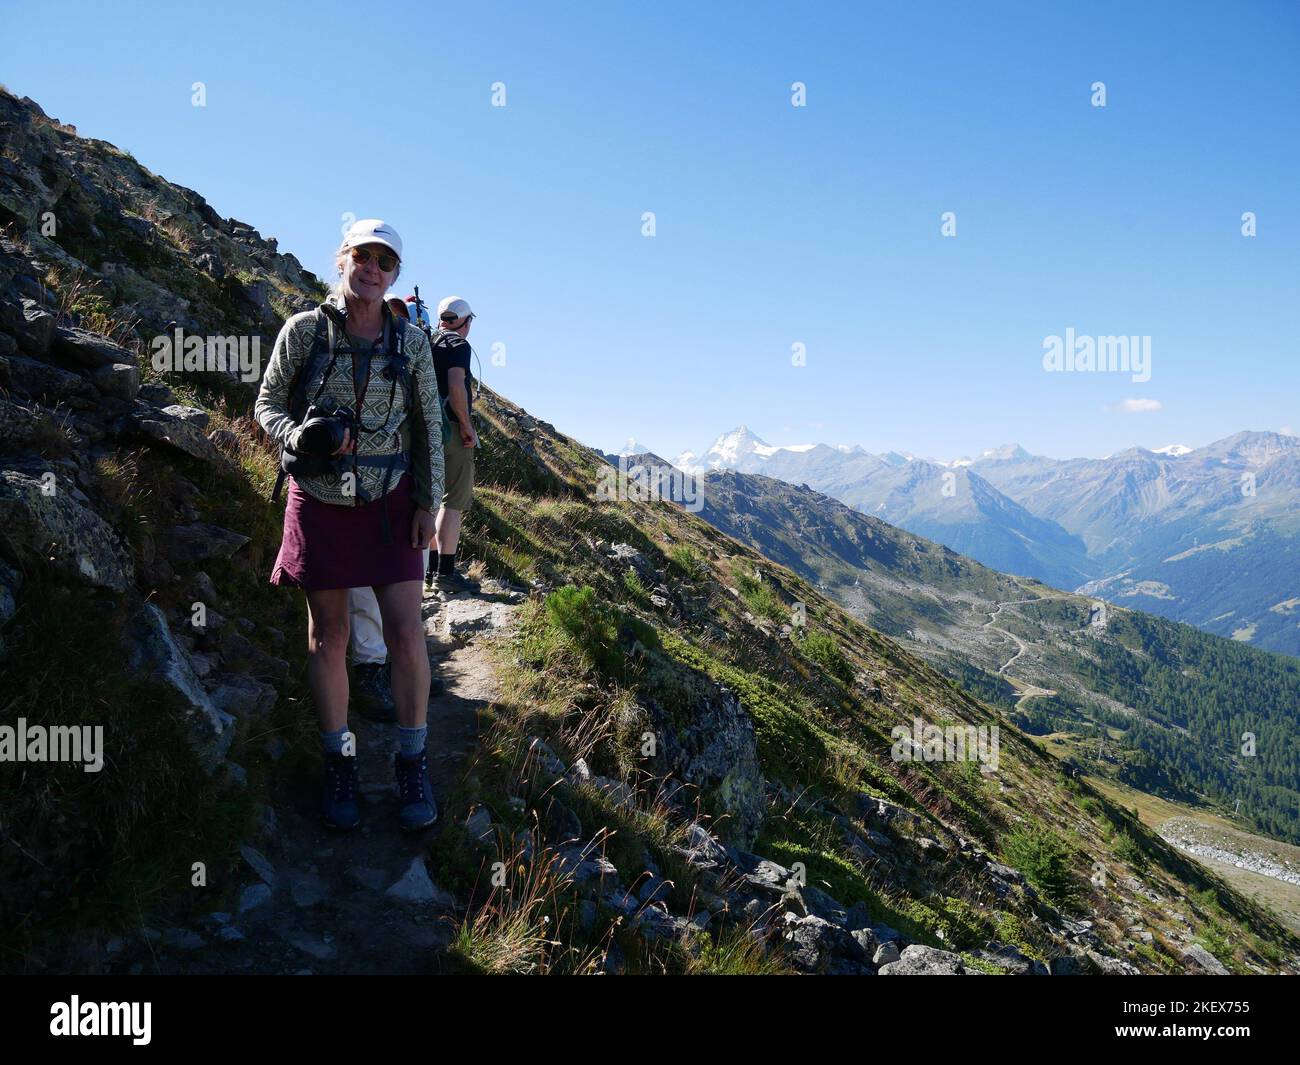 Images de paysages et fleurs sauvages de montagne prises en marchant sur la haute route des Walker dans les Alpes suisses Banque D'Images